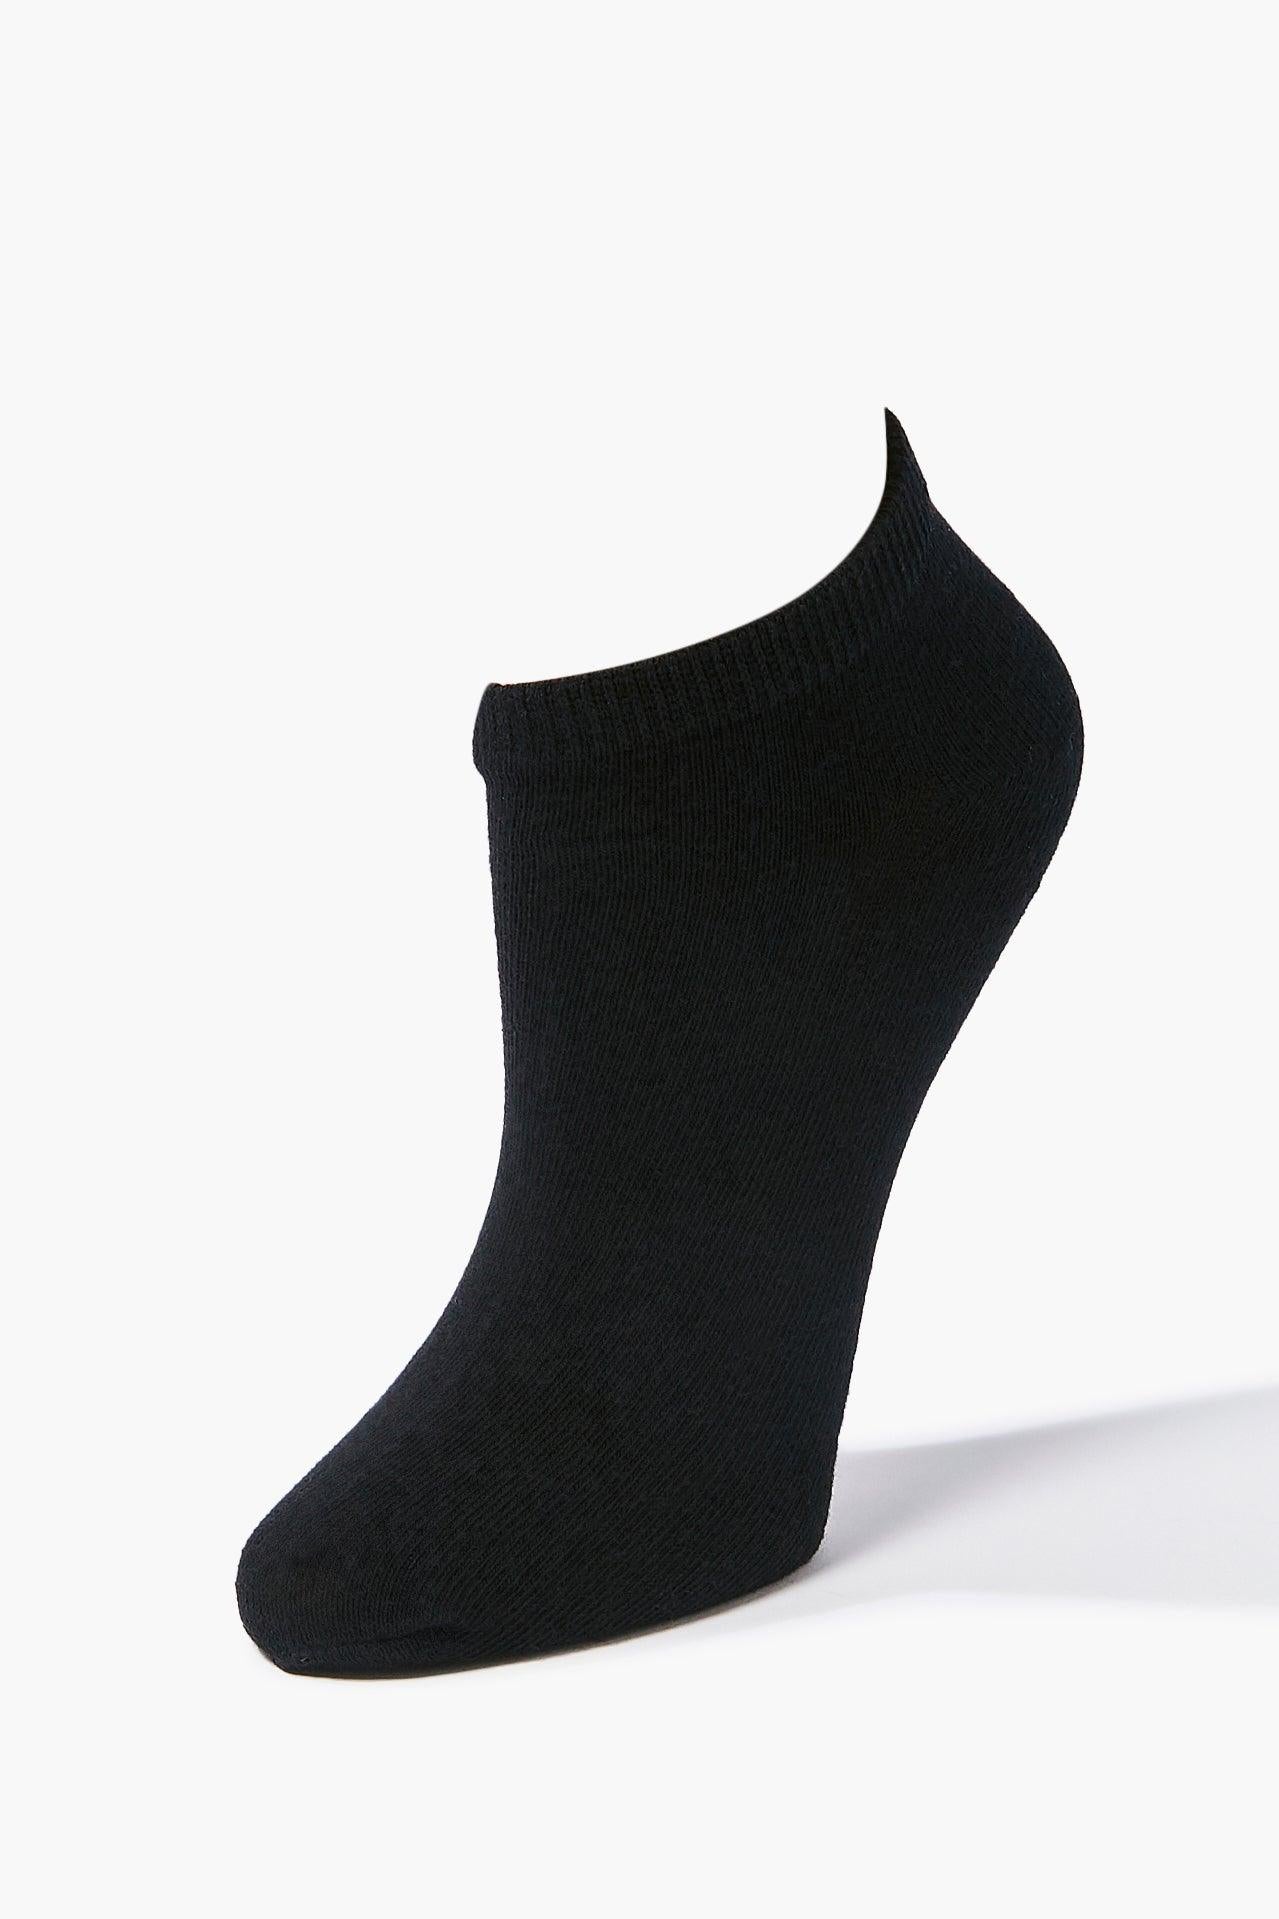 Black Knit Ankle Socks - 5 Pack 1